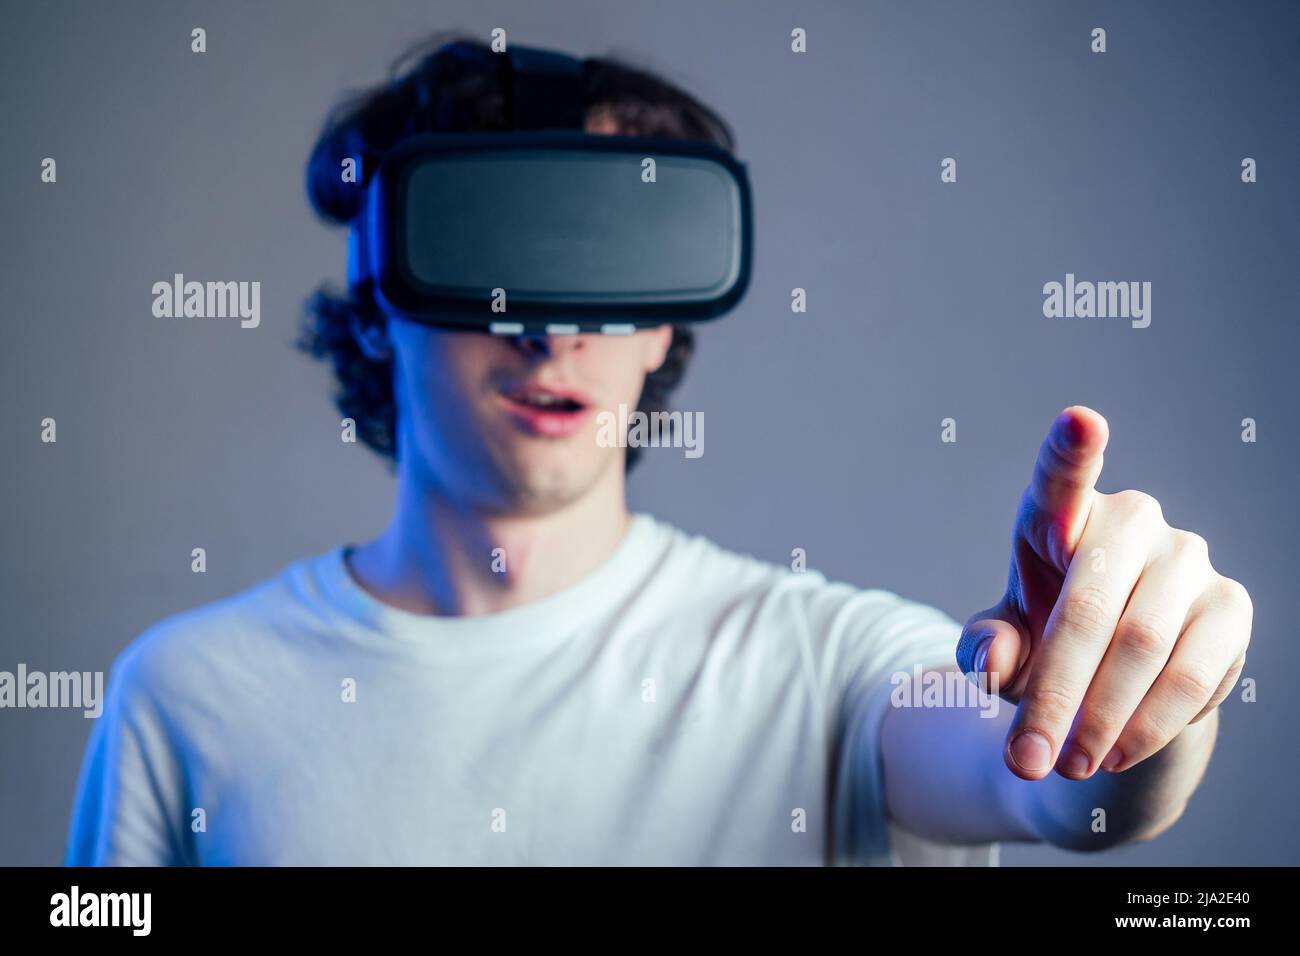 Porträt eines jungen Mannes in der virtuellen Realität zeigt seine Finger grauen Wand Hintergrund. Das Konzept der Spiele in der Maske der virtuellen Realität Stockfoto